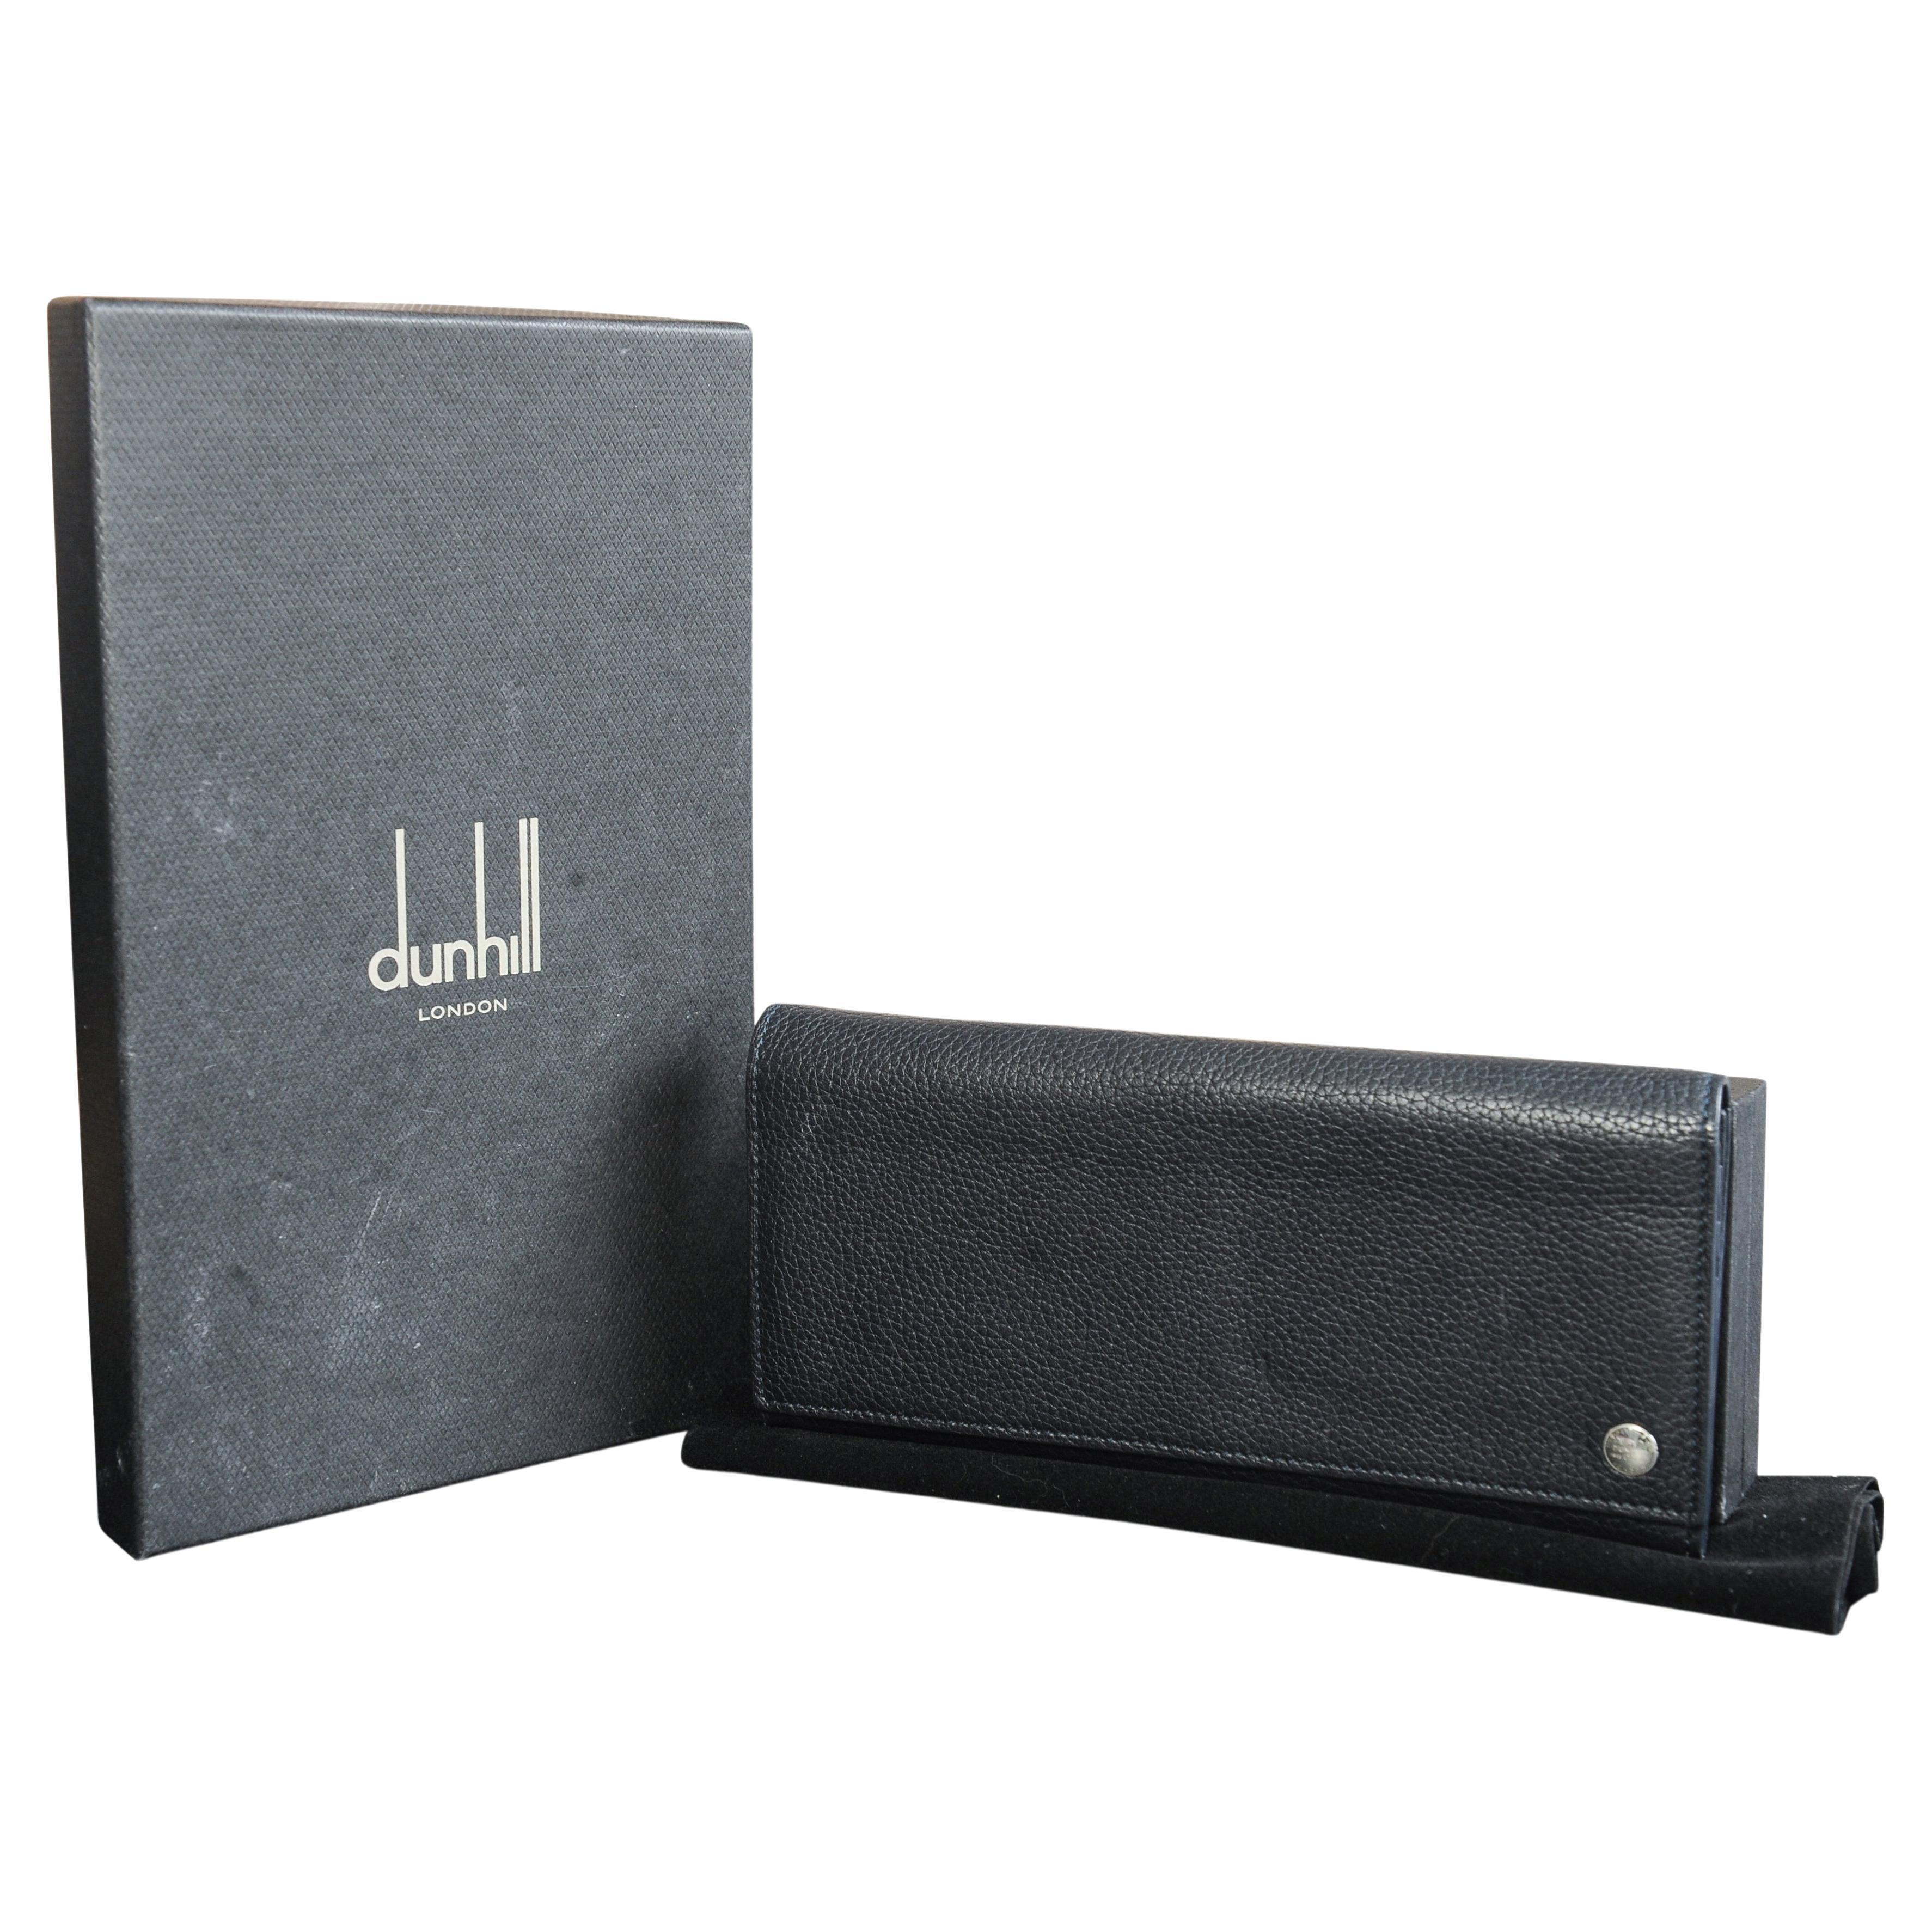 Dunhill London Portemonnaie aus schwarzem Kalbsleder mit Schachtel, hergestellt in Italien 

Ref: LZV31ON

Größe der Brieftasche Breite 19,5cm I Höhe 9,5 I Tiefe 1,5cm

Ausgestattet mit zehn Kartenfächern, einem Reißverschlussfach für Münzen und